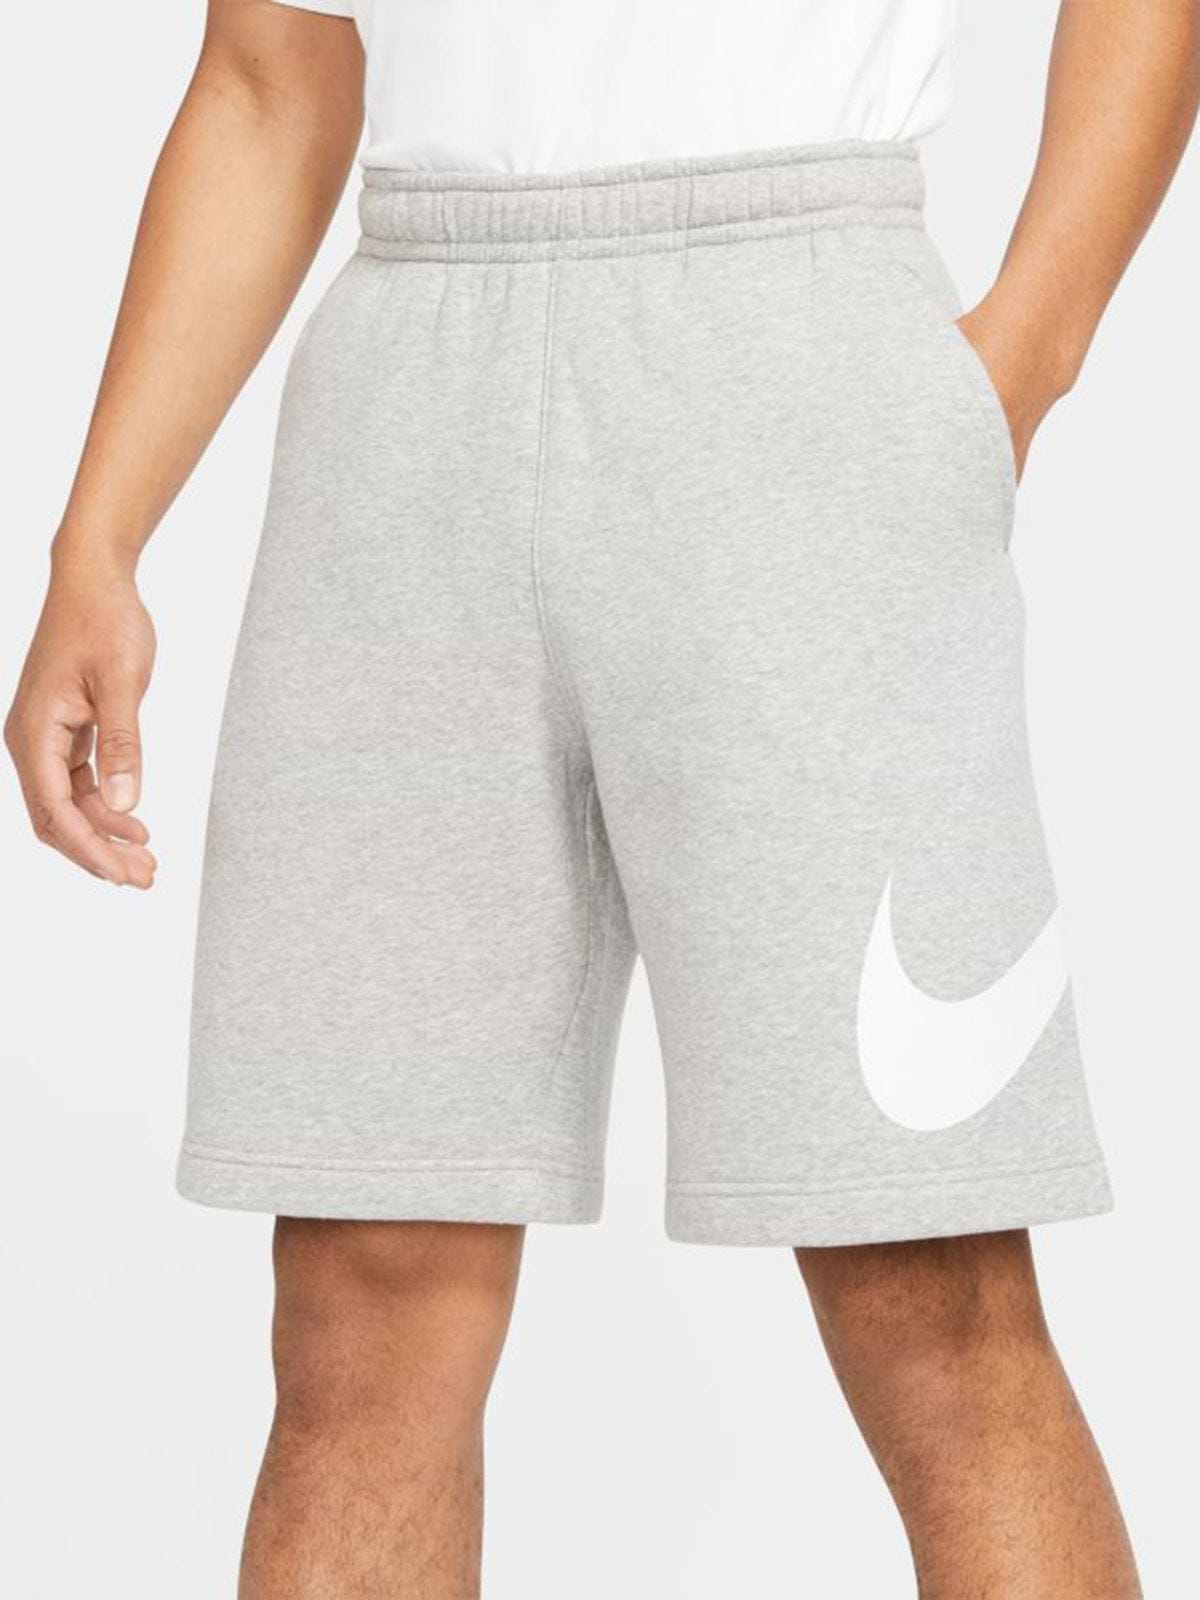 מכנסי ברמודה ספורטיביים עם הדפס לוגו- Nike|נייק